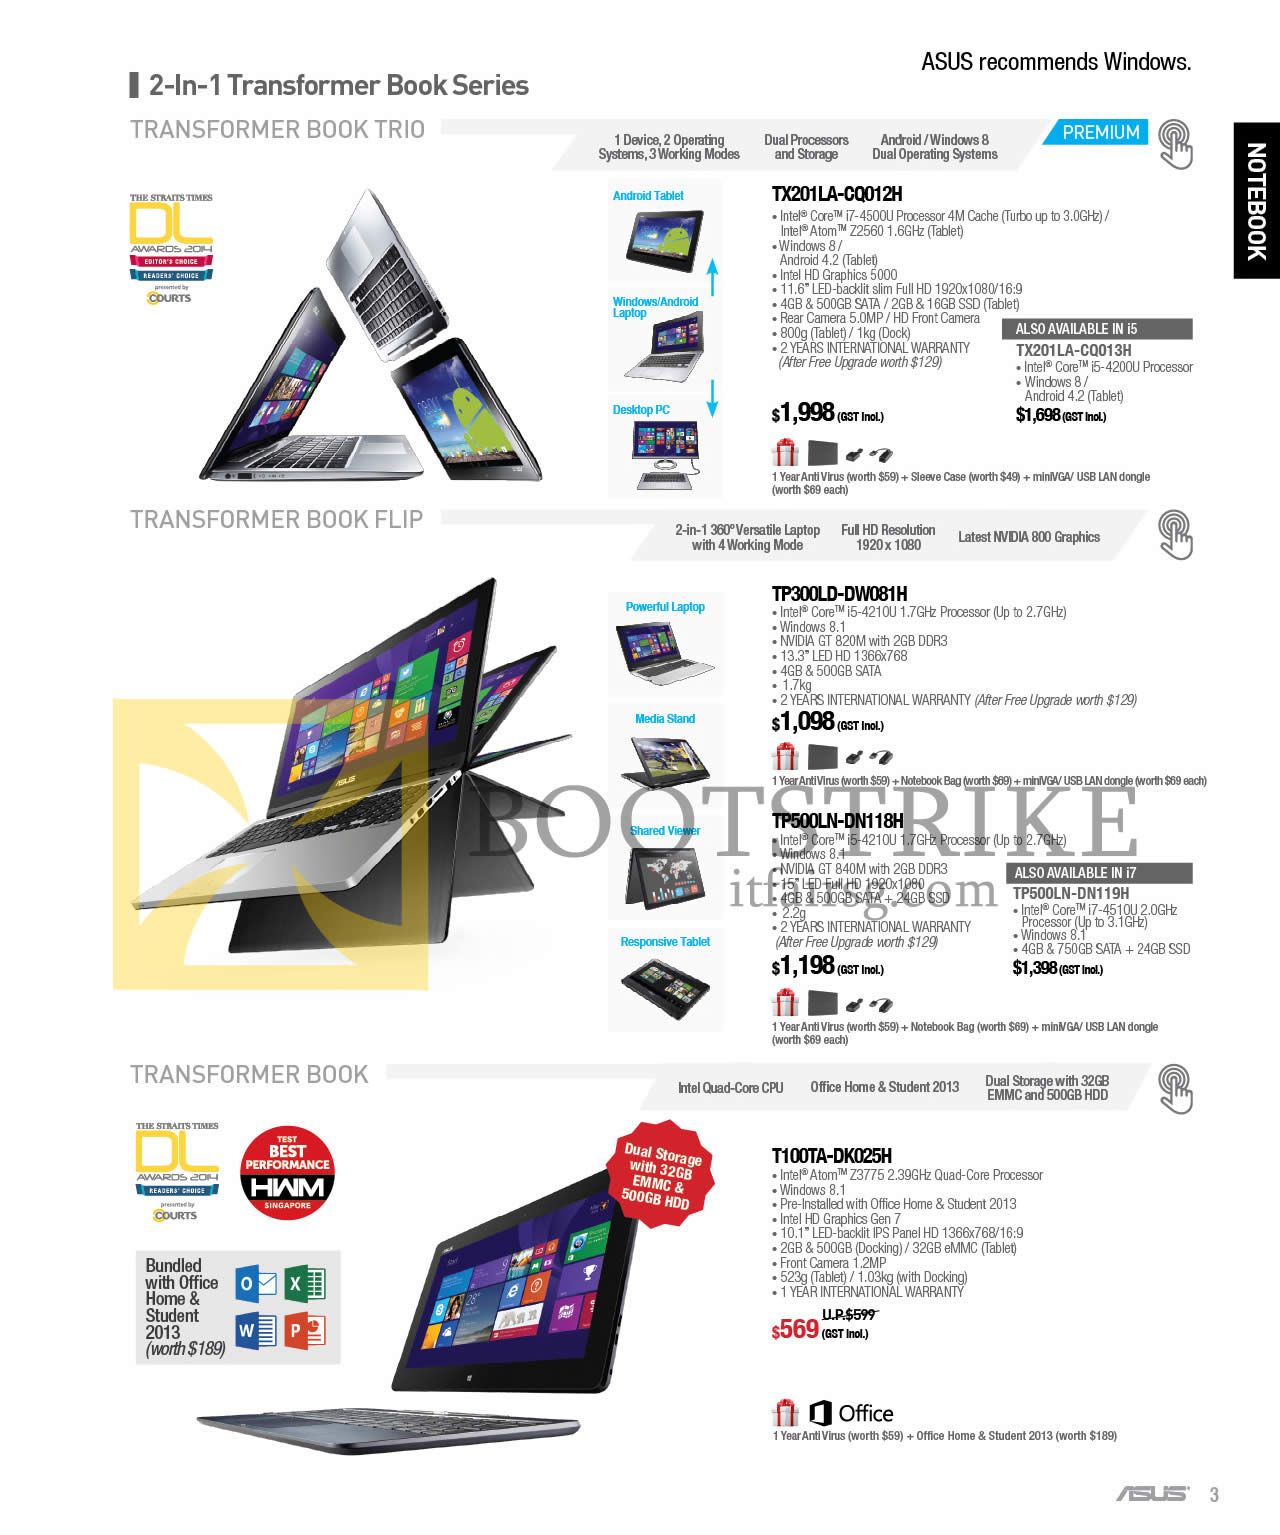 SITEX 2014 price list image brochure of ASUS Notebooks TX201LA-CQ012H, CQ013H, TP300LD-DW081H, TP500LN-DN118H, DN119H, T100TA-DK025H